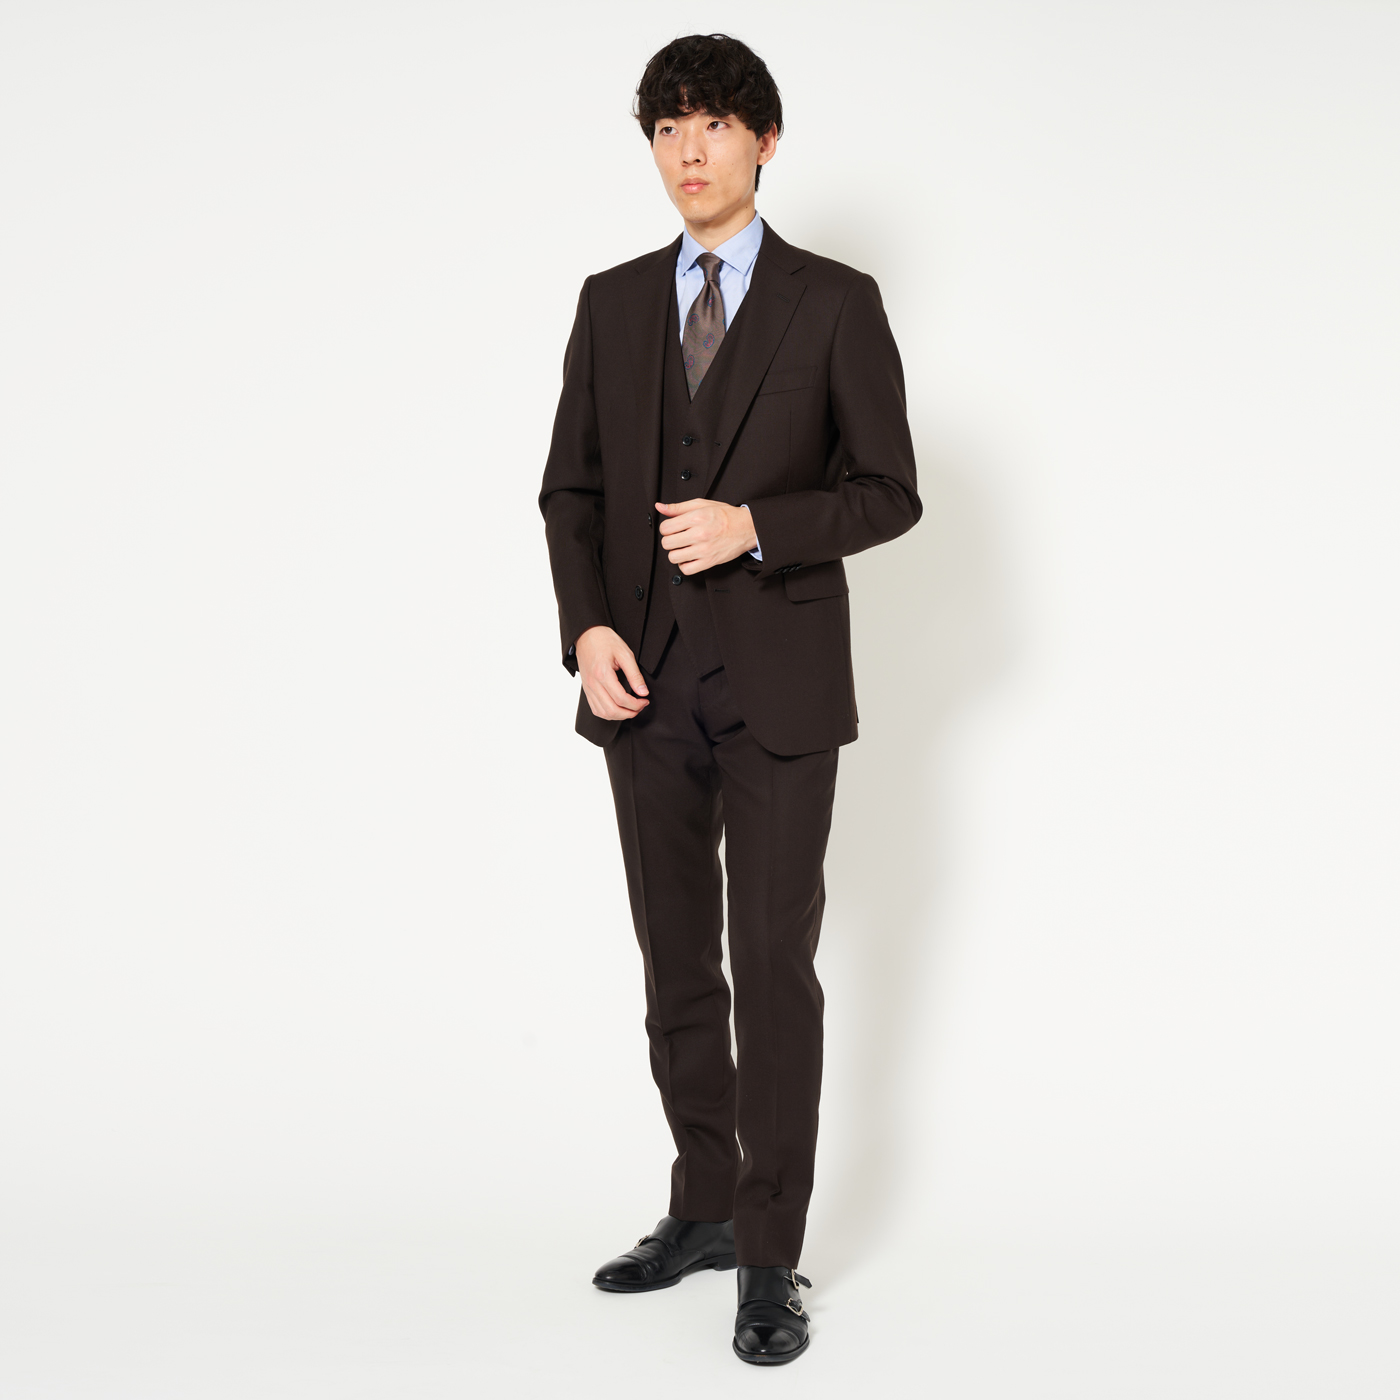 【STAFFコーデ】ブラウンスーツでつくる綺麗めスタイル